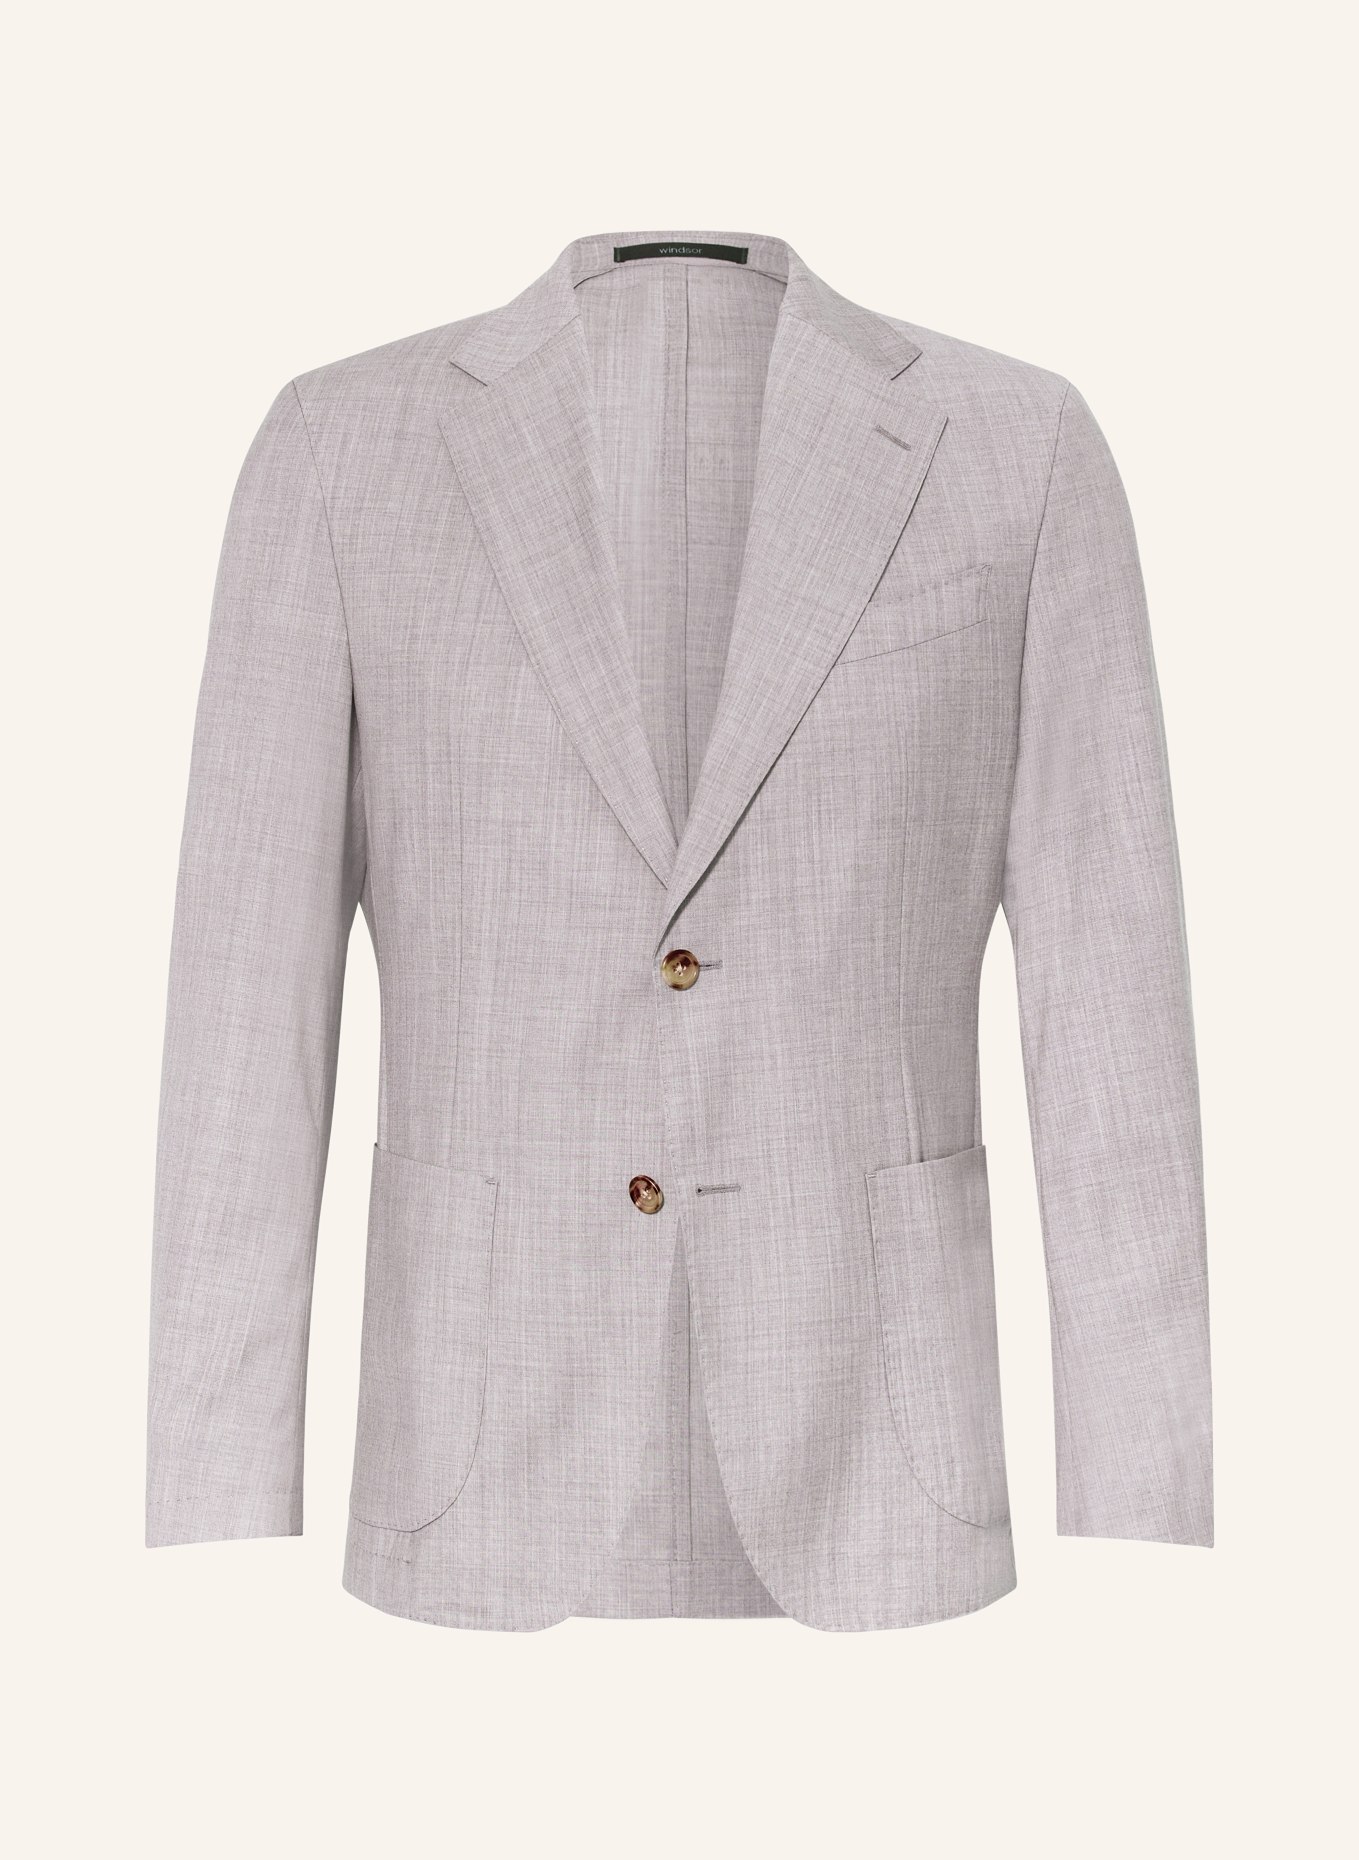 windsor. Suit jacket TRAVEL shaped Fit, Color: 035 Medium Grey                035 (Image 1)